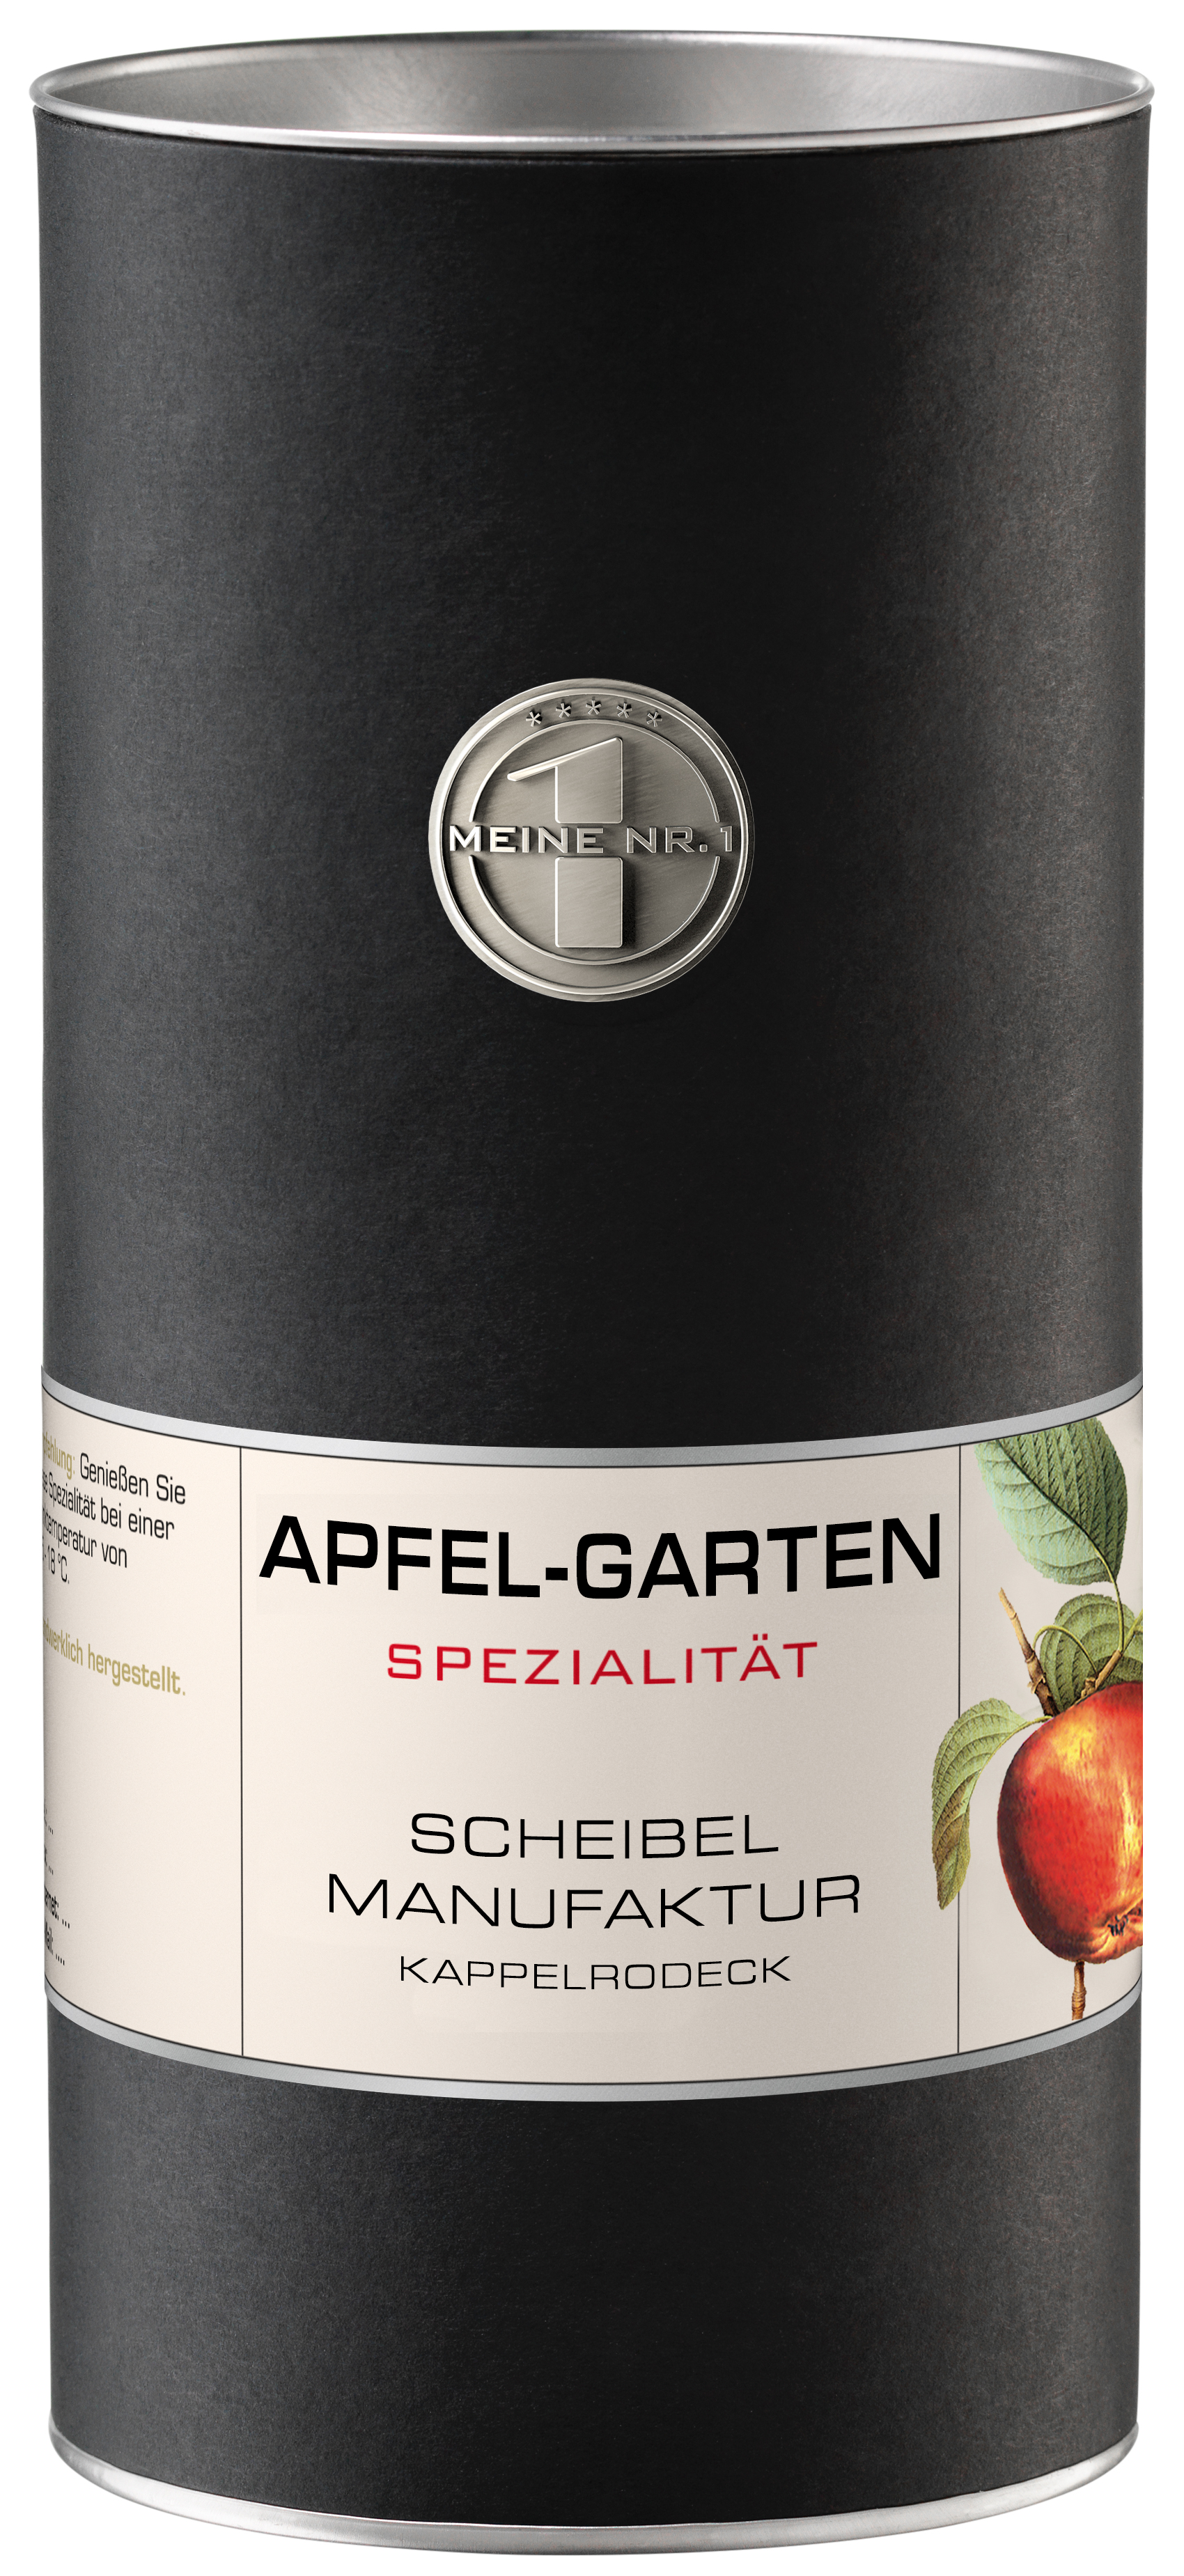 Scheibel Apfel-Garten 35% Vol.